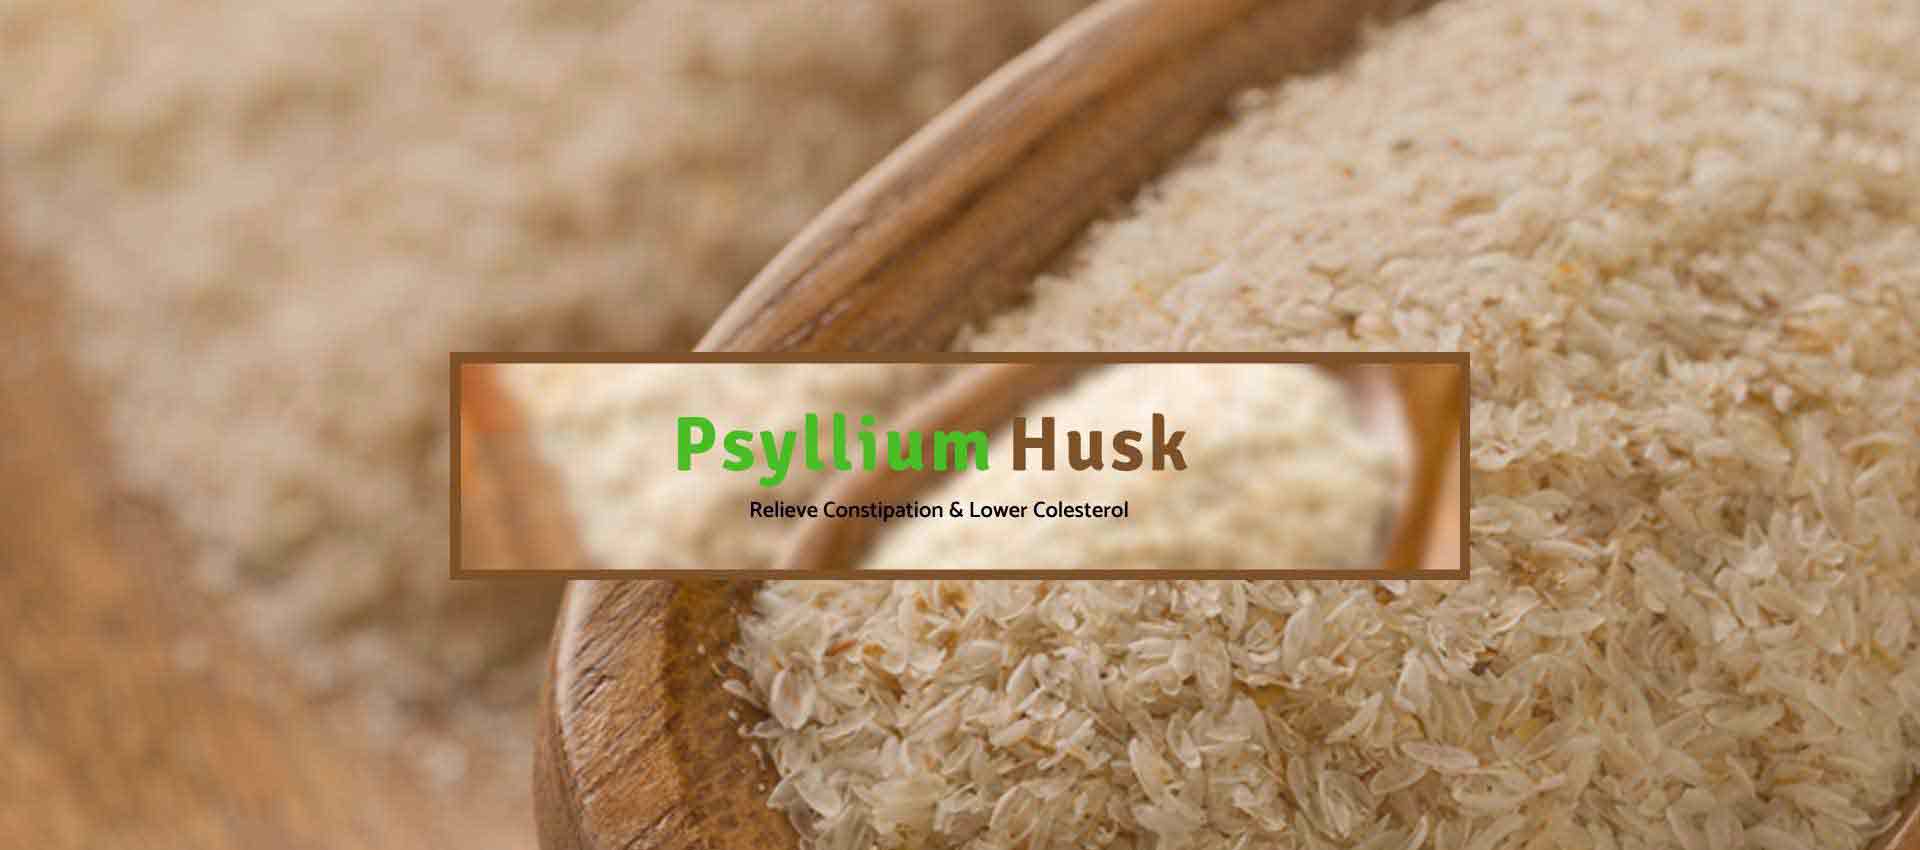 Psyllium Husk Manufacturers in Turkey